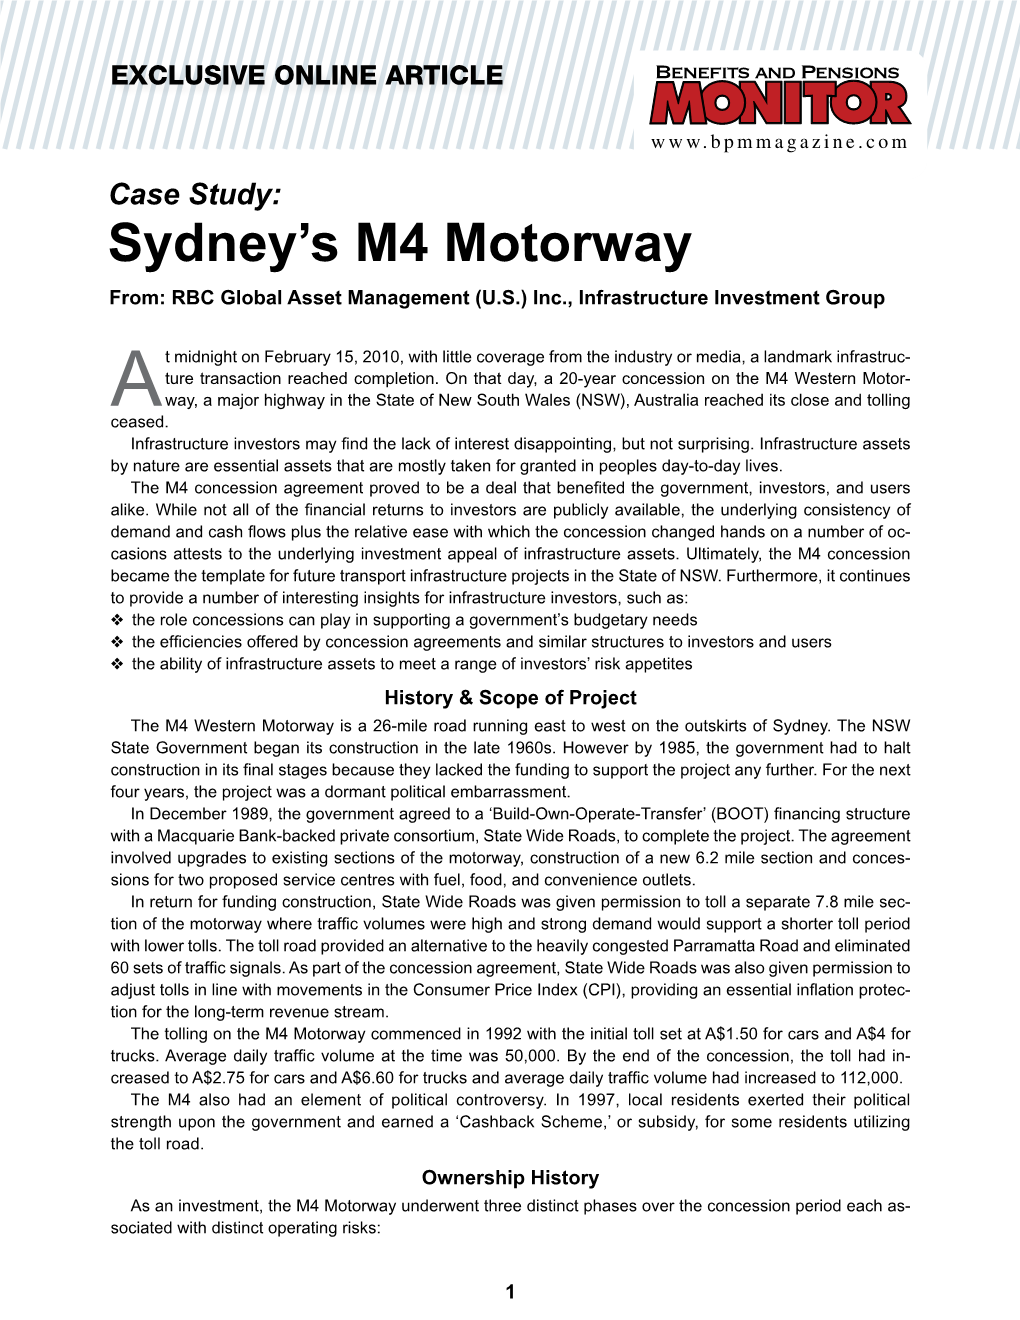 Sydney's M4 Motorway